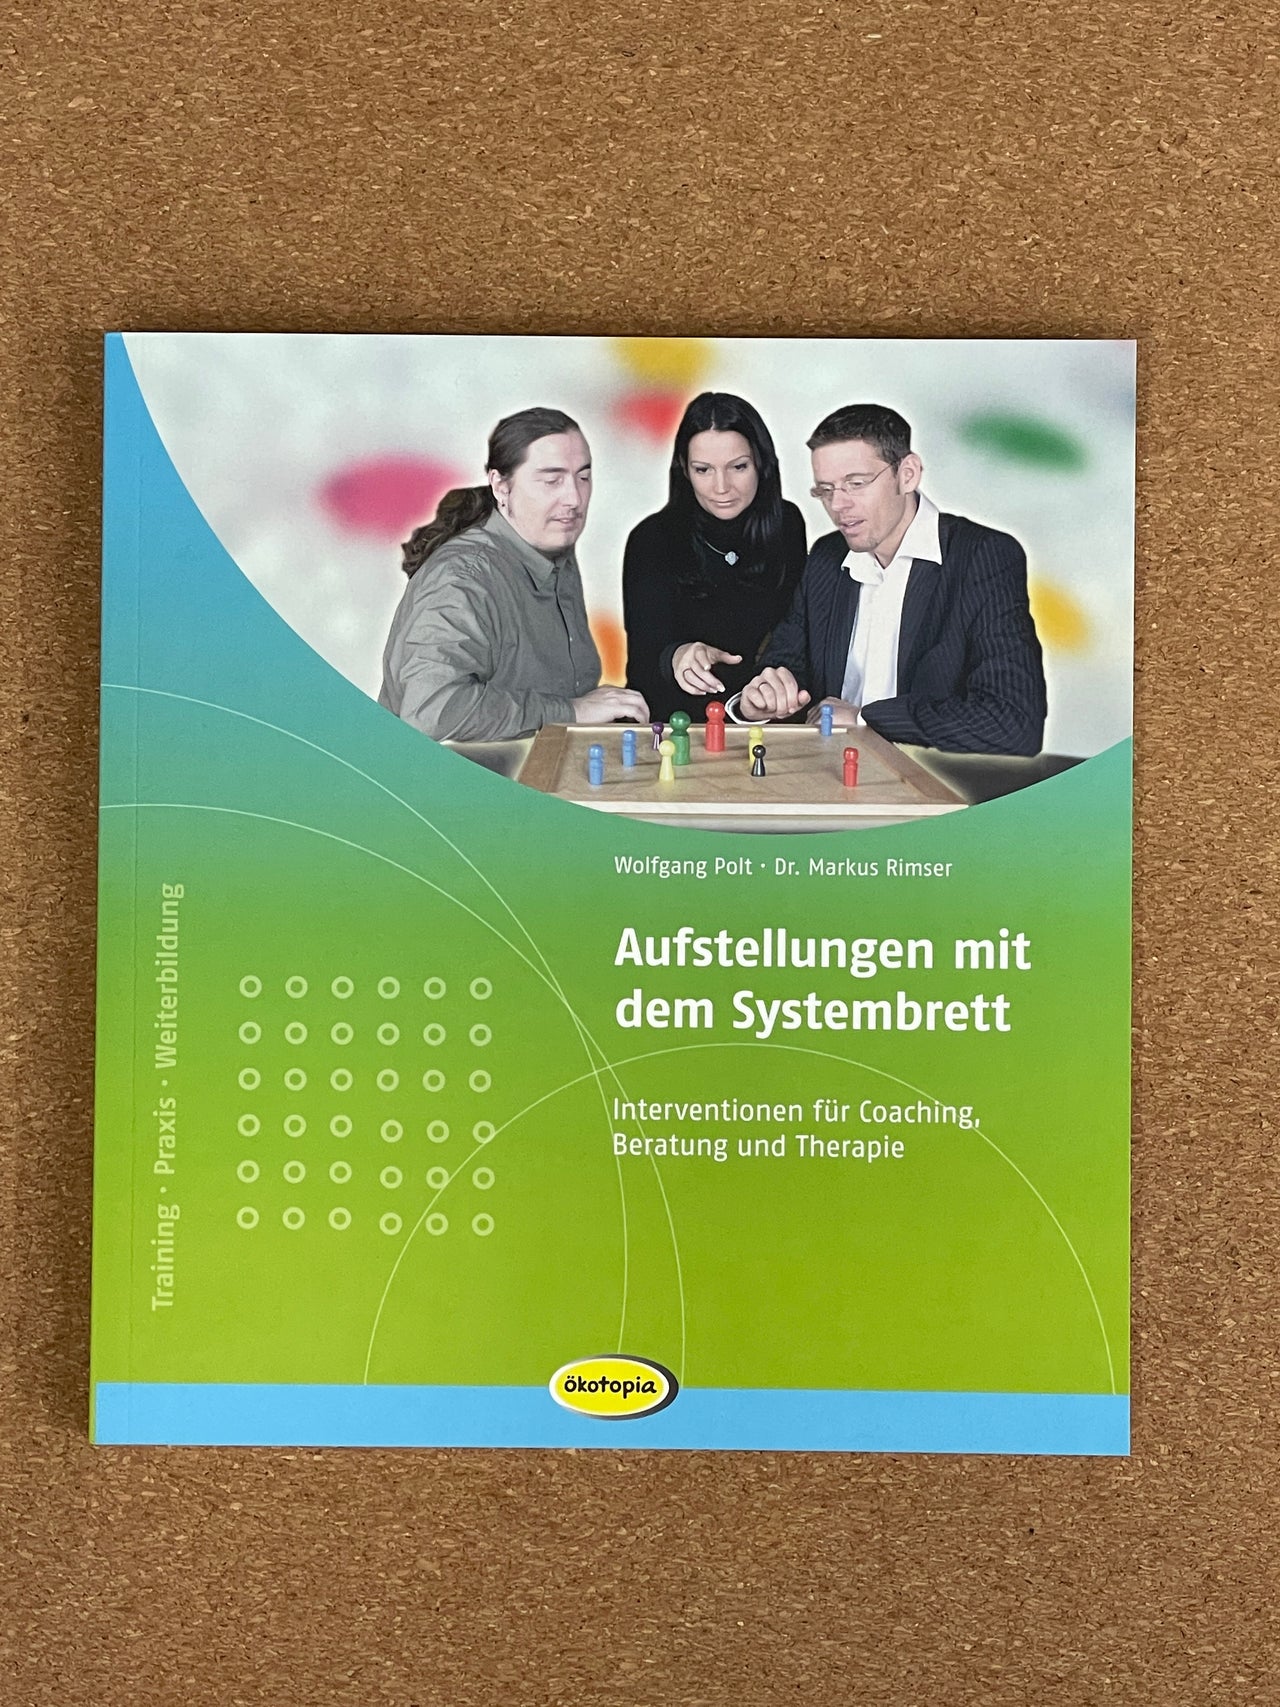 Aufstellungen mit dem Systembrett - Wolfgang Polt, Dr. Markus Rimser